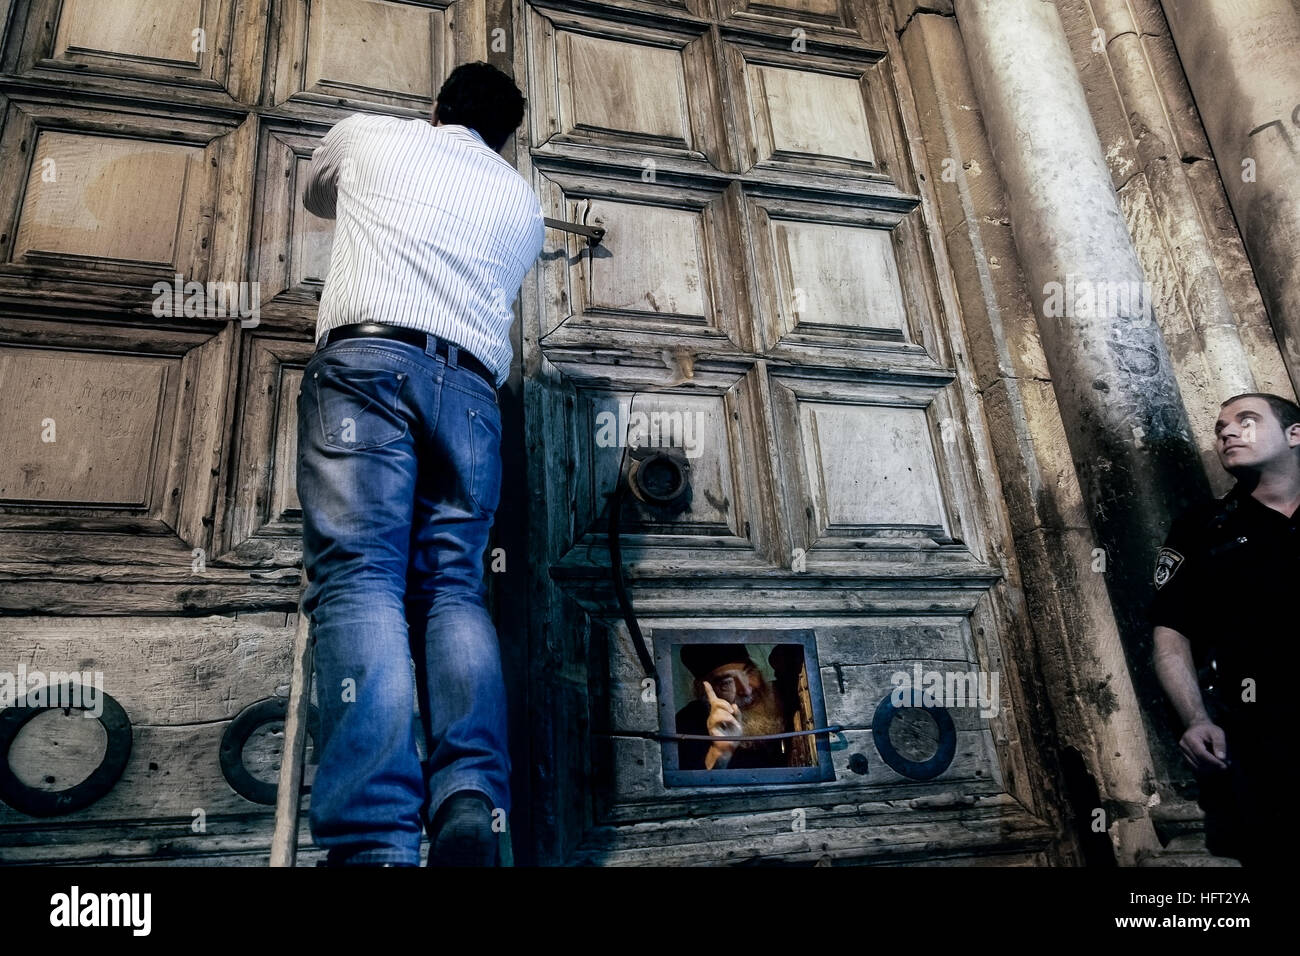 Jérusalem, Israël - 26 novembre 2013 : Un rituel traditionnel de la fermeture des portes de l'église de Saint Sépulcre. Banque D'Images